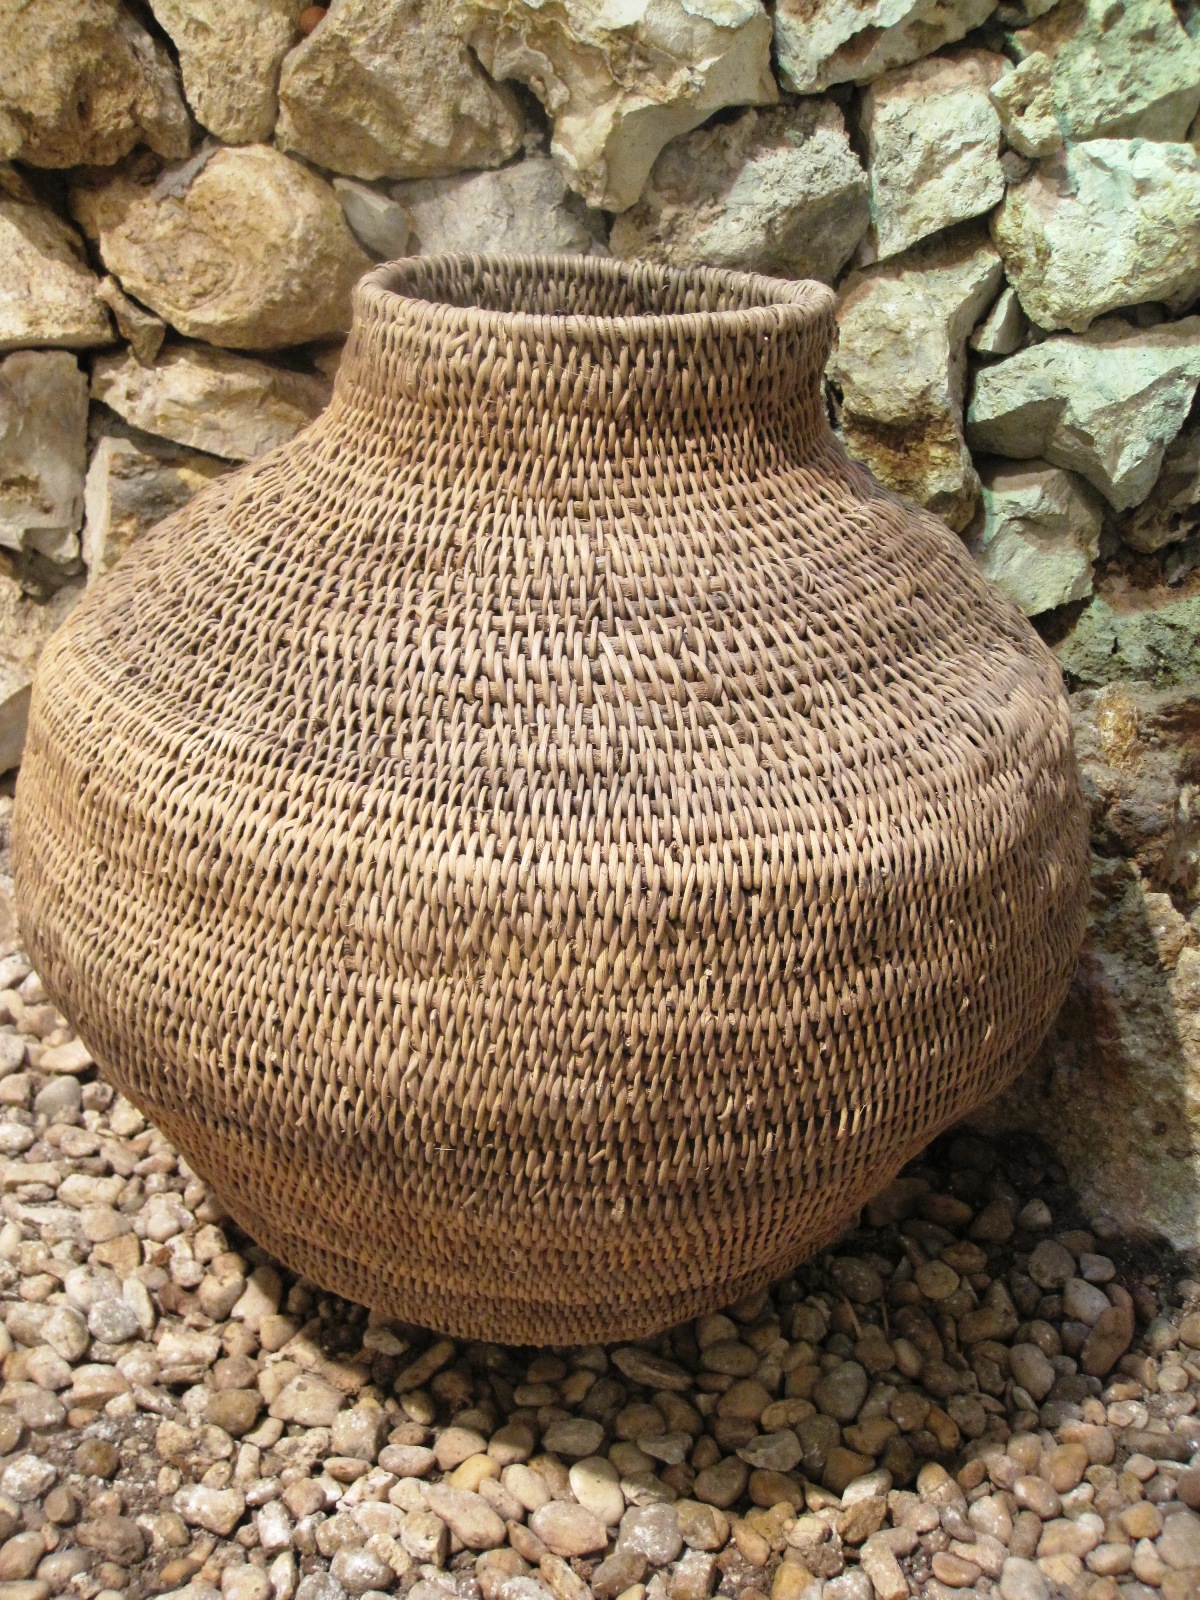 Buhera Tall baskets - Size: 13" - 15"